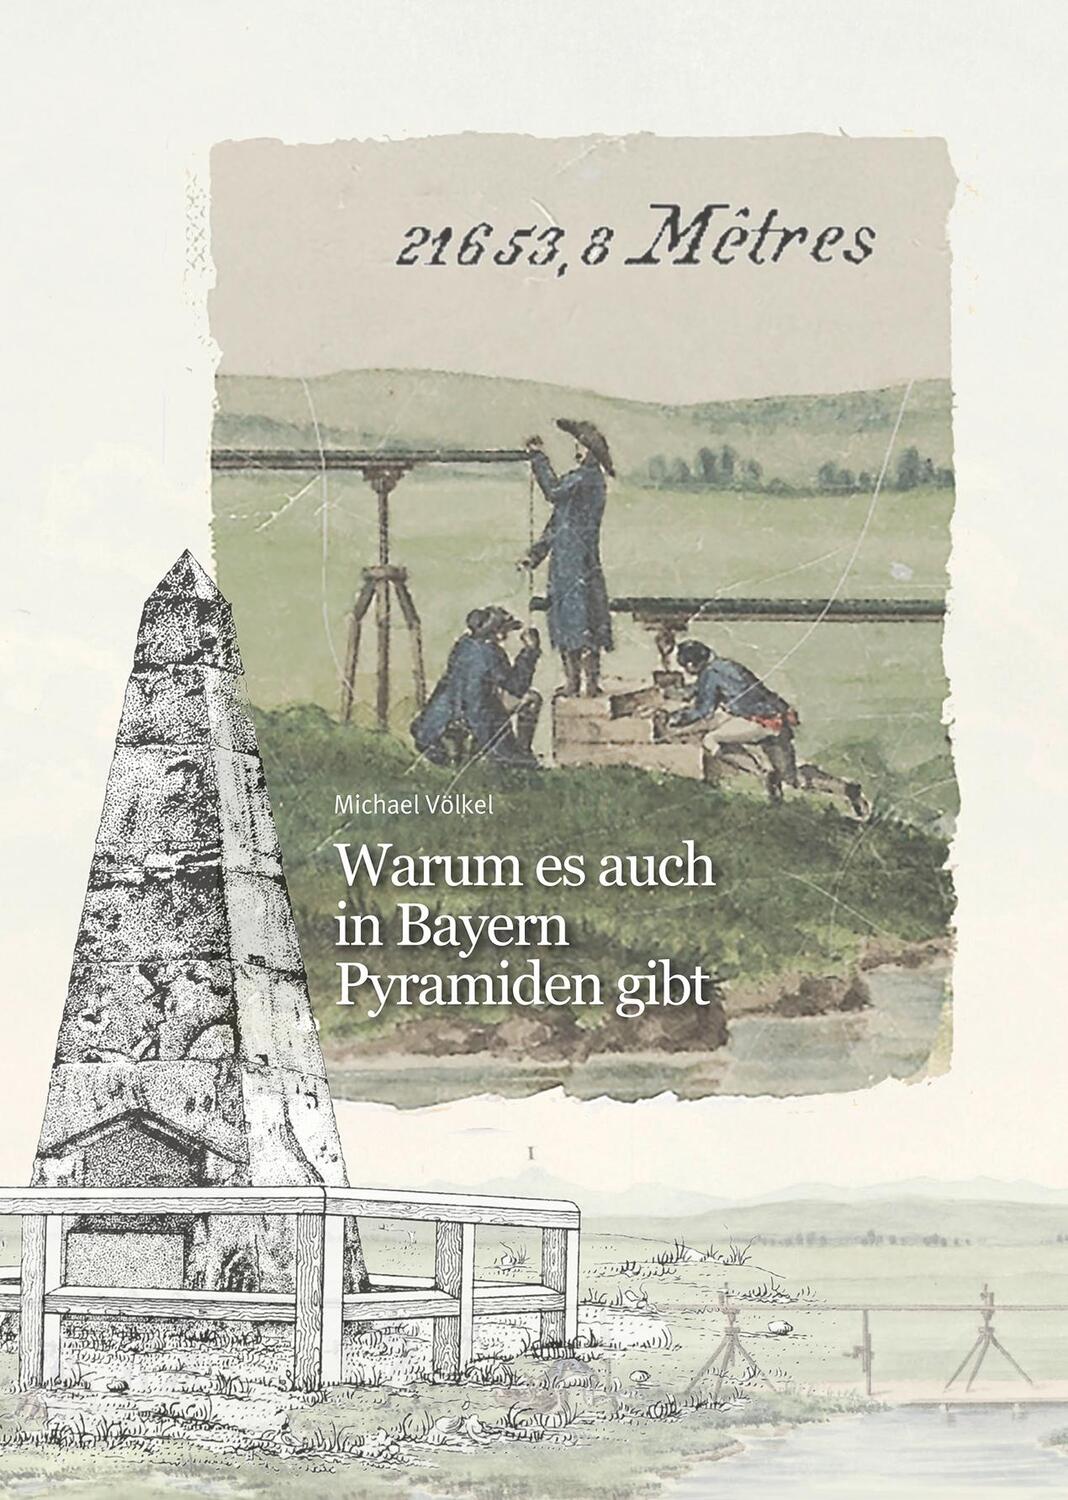 Cover: 9783941717411 | Warum es auch in Bayern Pyramiden gibt | 21653,8 Mêtres | Michael